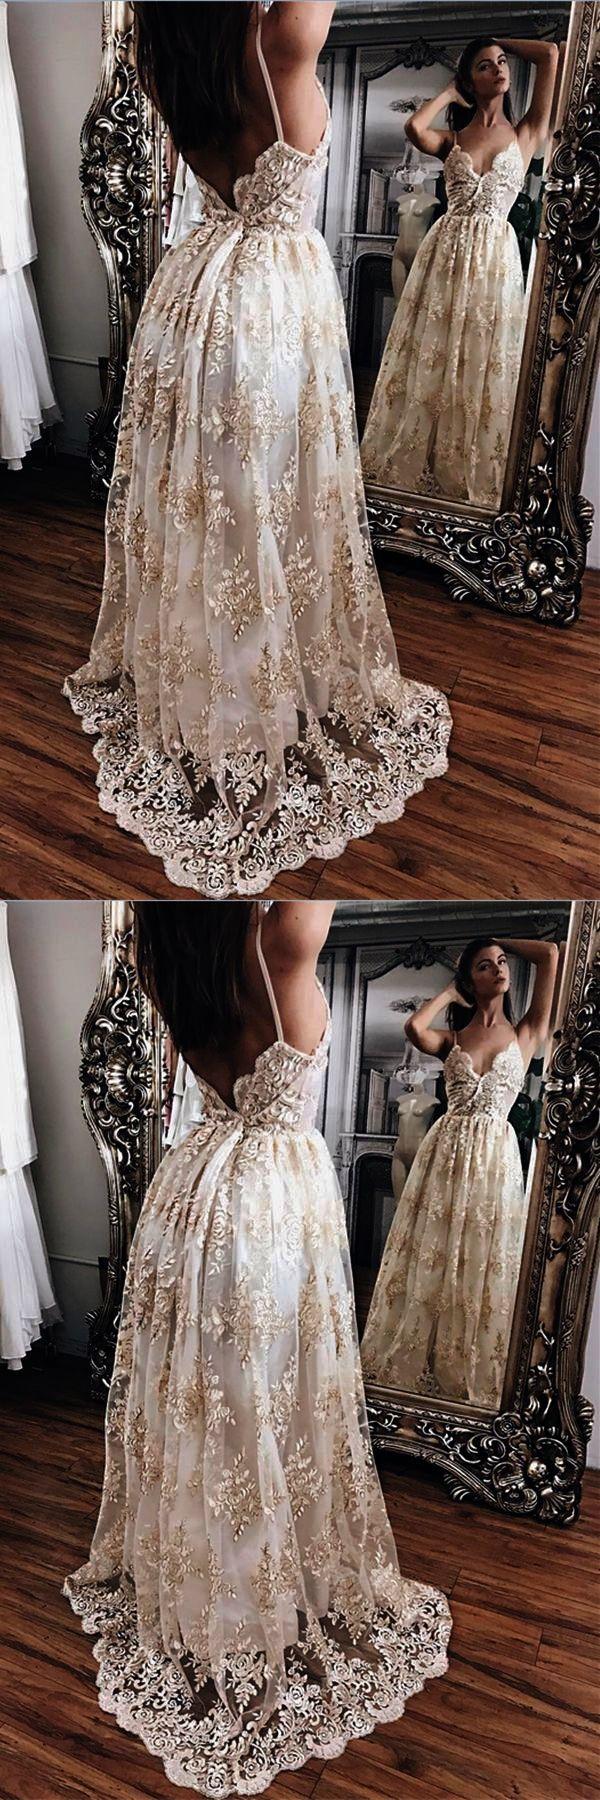 Свадьба - Trendy - Most Beautiful Lace Wedding Dresses :-) 